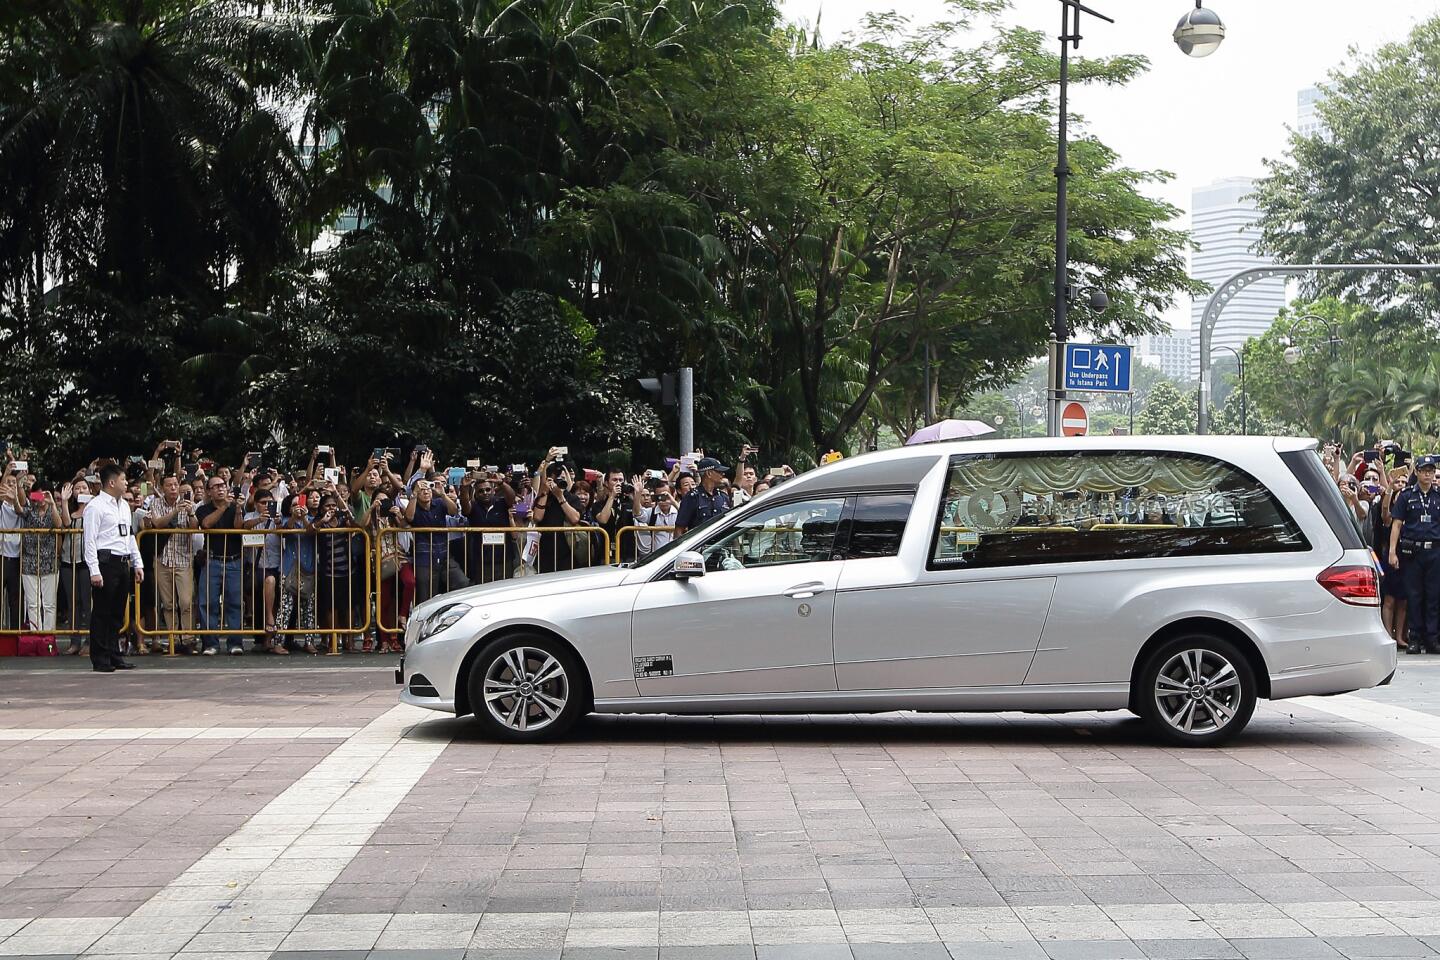 Lee Kuan Yew's hearse